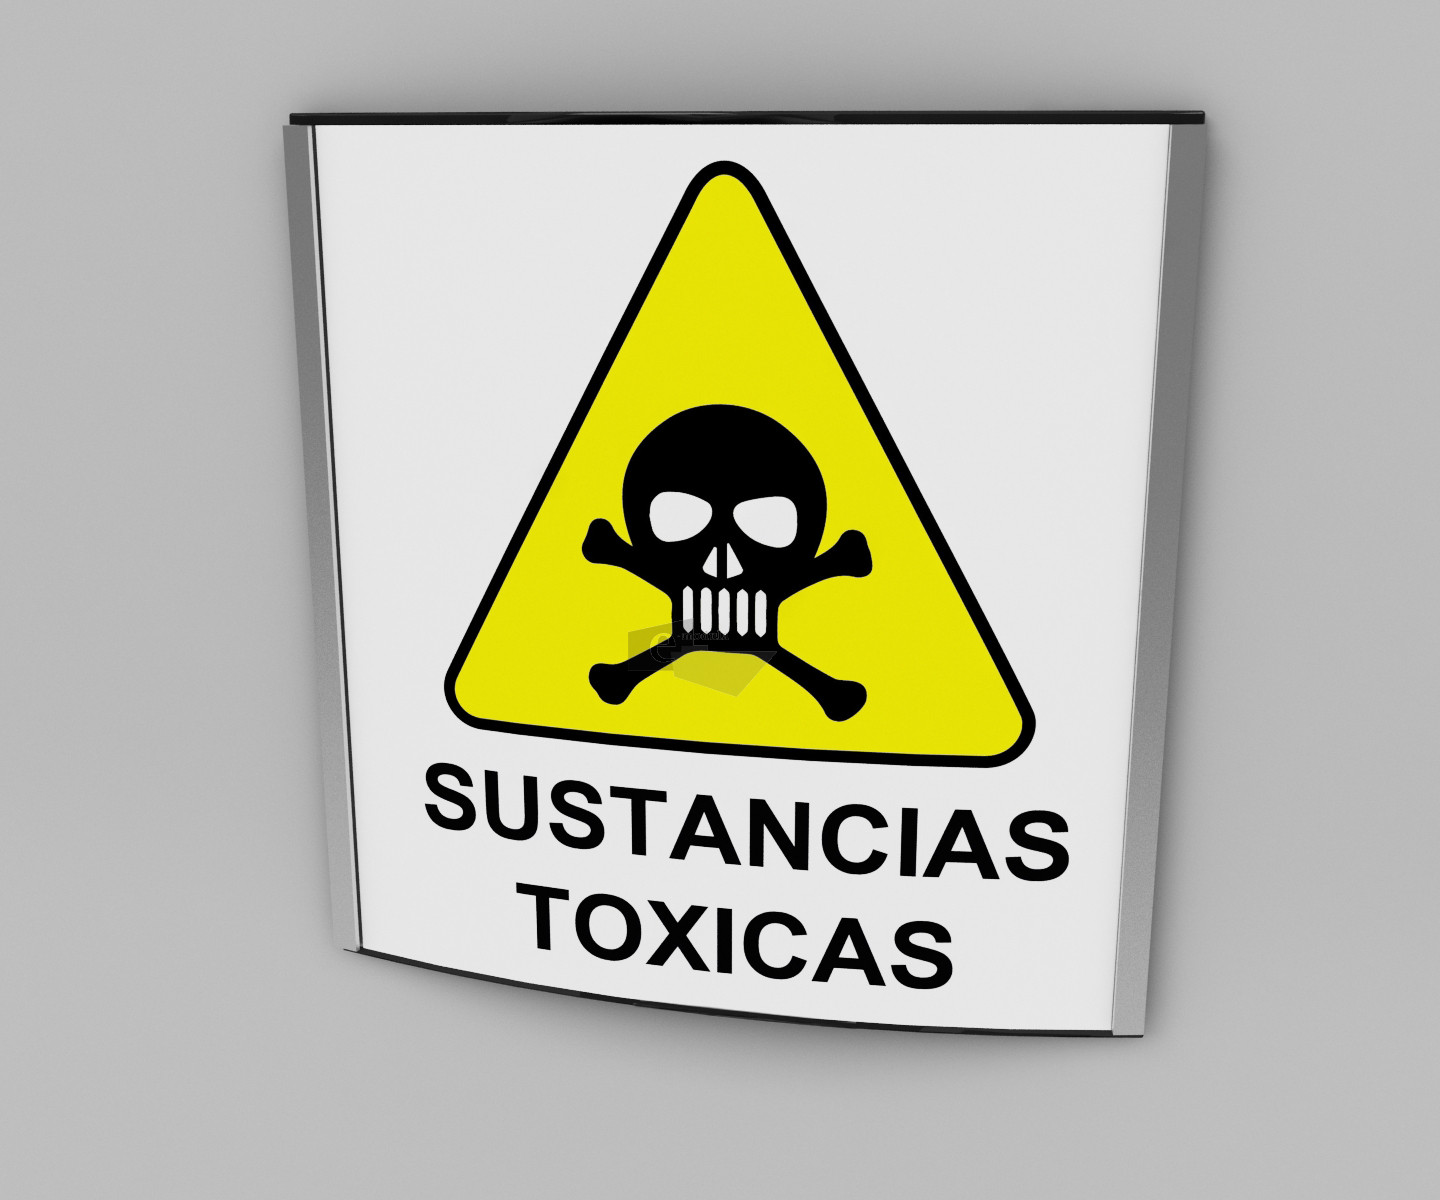 20x20cm / Sustancias toxicas / señal / letrero / protección civil / curvo / amarillo fondo blanco